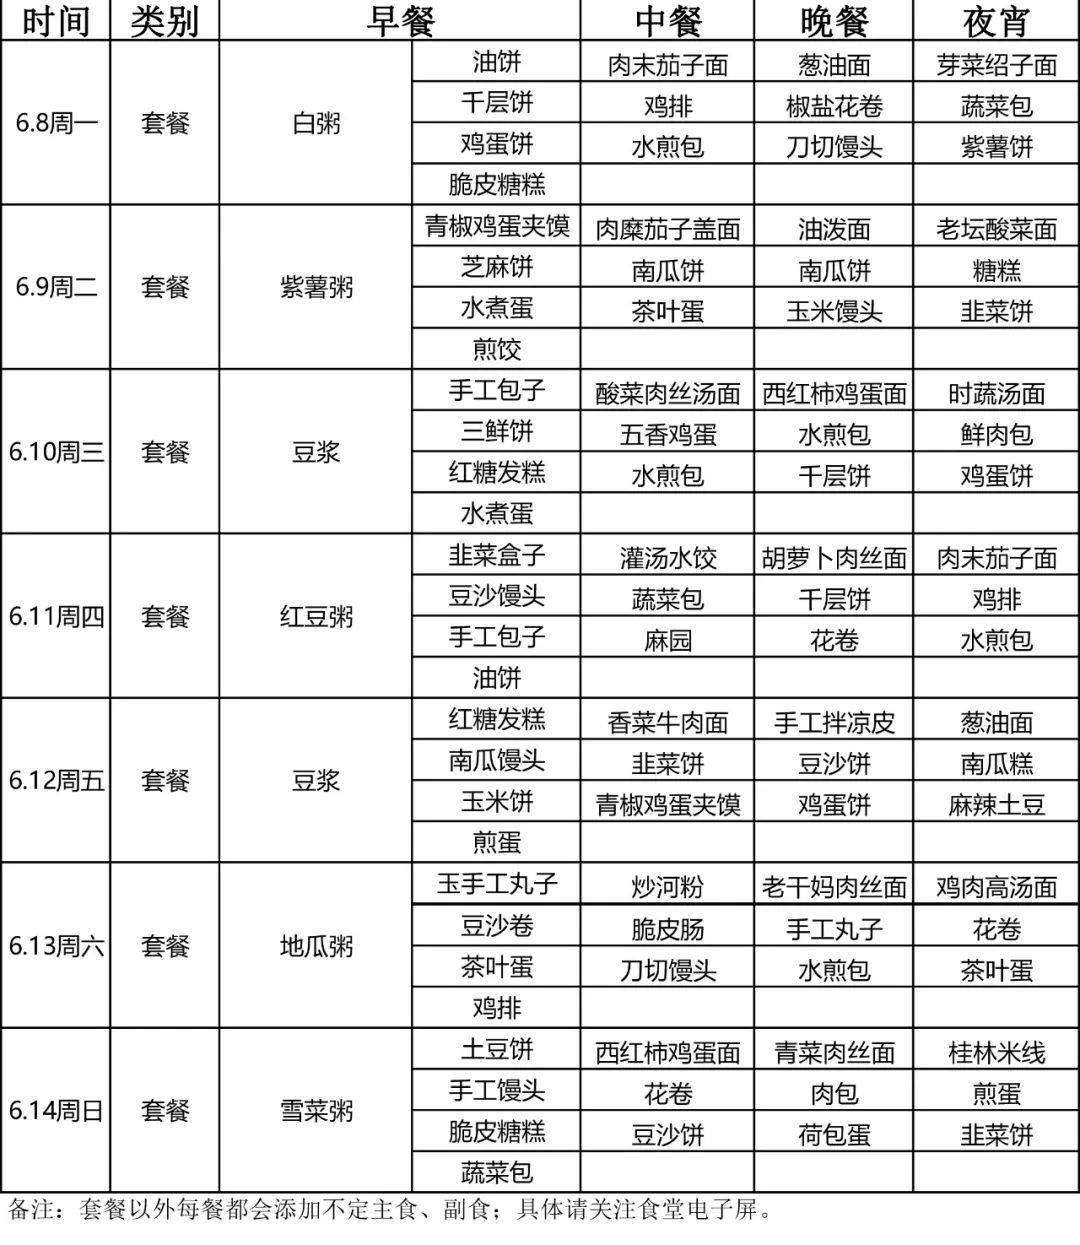 舜宇食堂本周菜单(6月8日-6月14日),记得收藏哦!